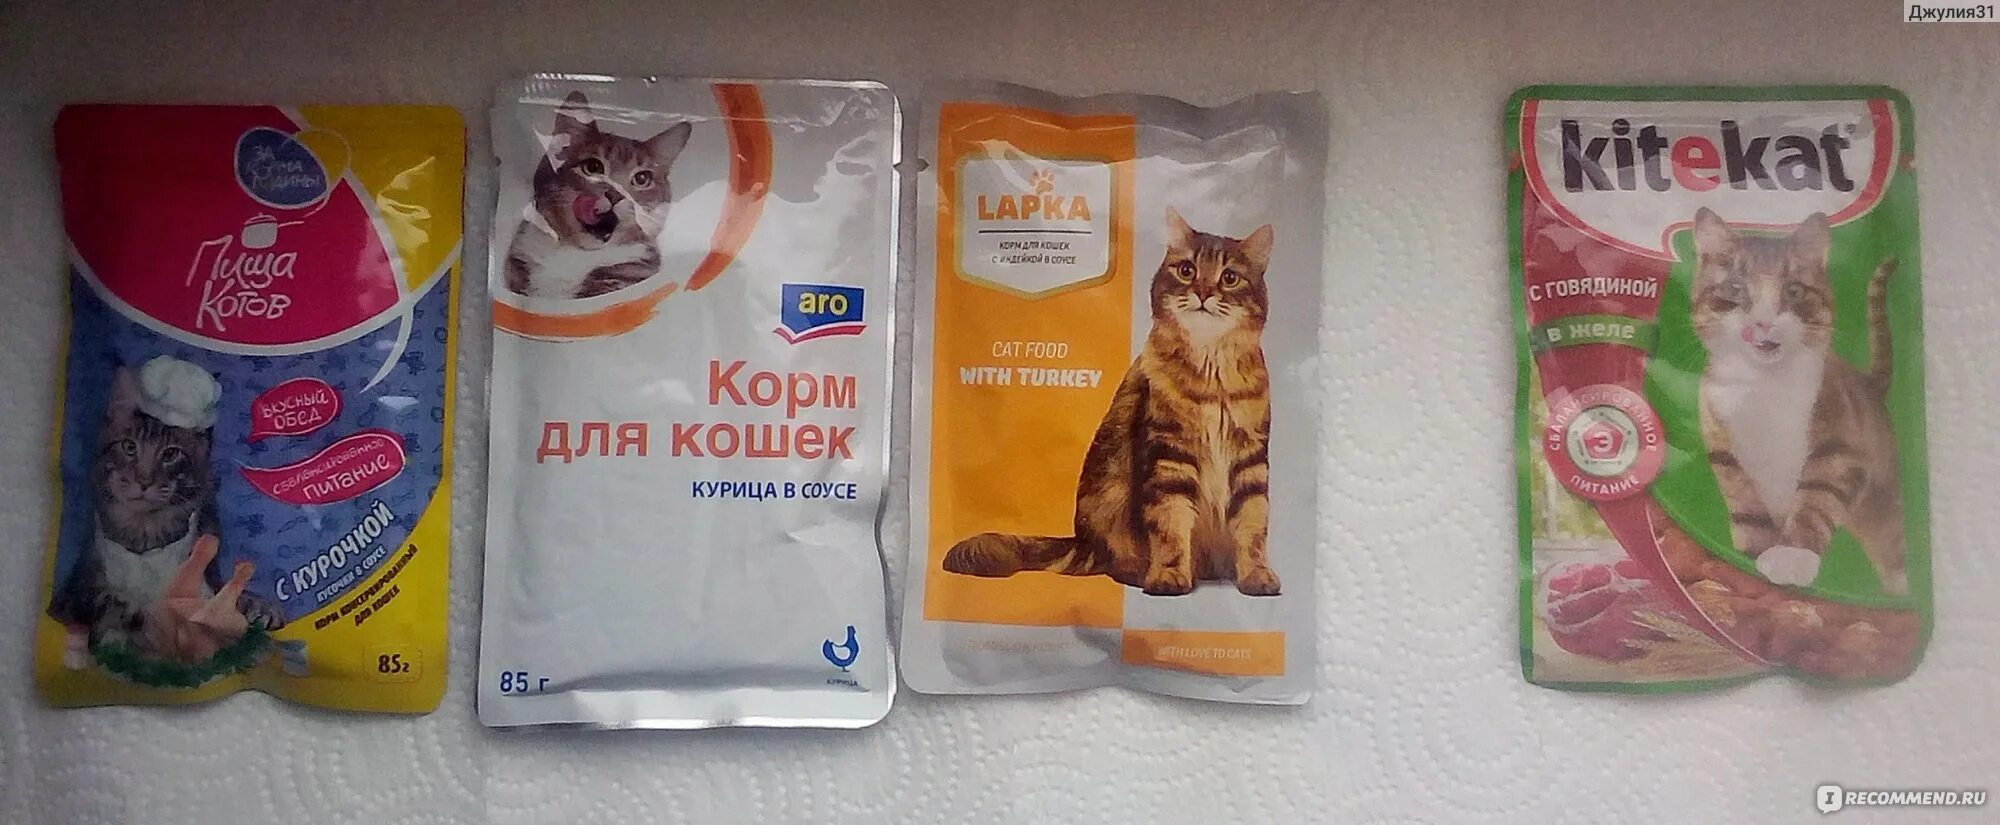 Дешевый кошачий корм в пакетиках. Самый дешевый кошачий корм в пакетиках. Корм в пакетиках премиум для котят. Корм ы пакетиках дл кошек.